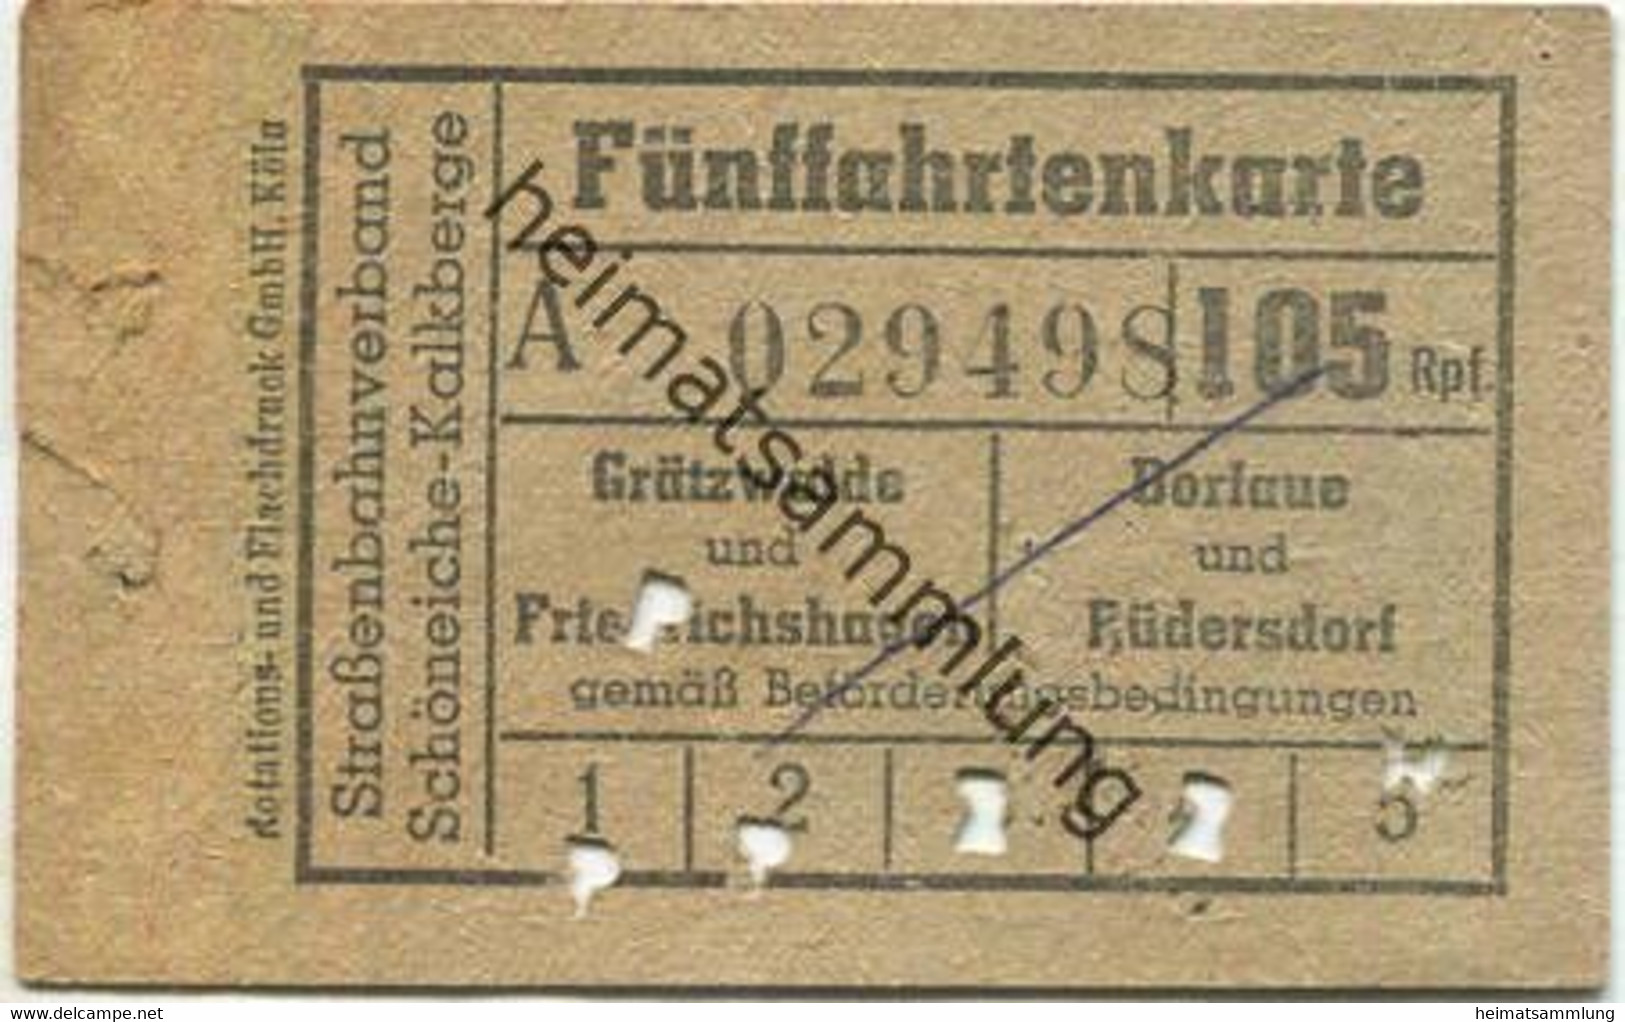 Deutschland - Strassenbahnverband Schöneiche Kalkberge - Fünffahrtenkarte 105Rpf. - Grätzwalde Und Friedrichshagen Oder - Europa